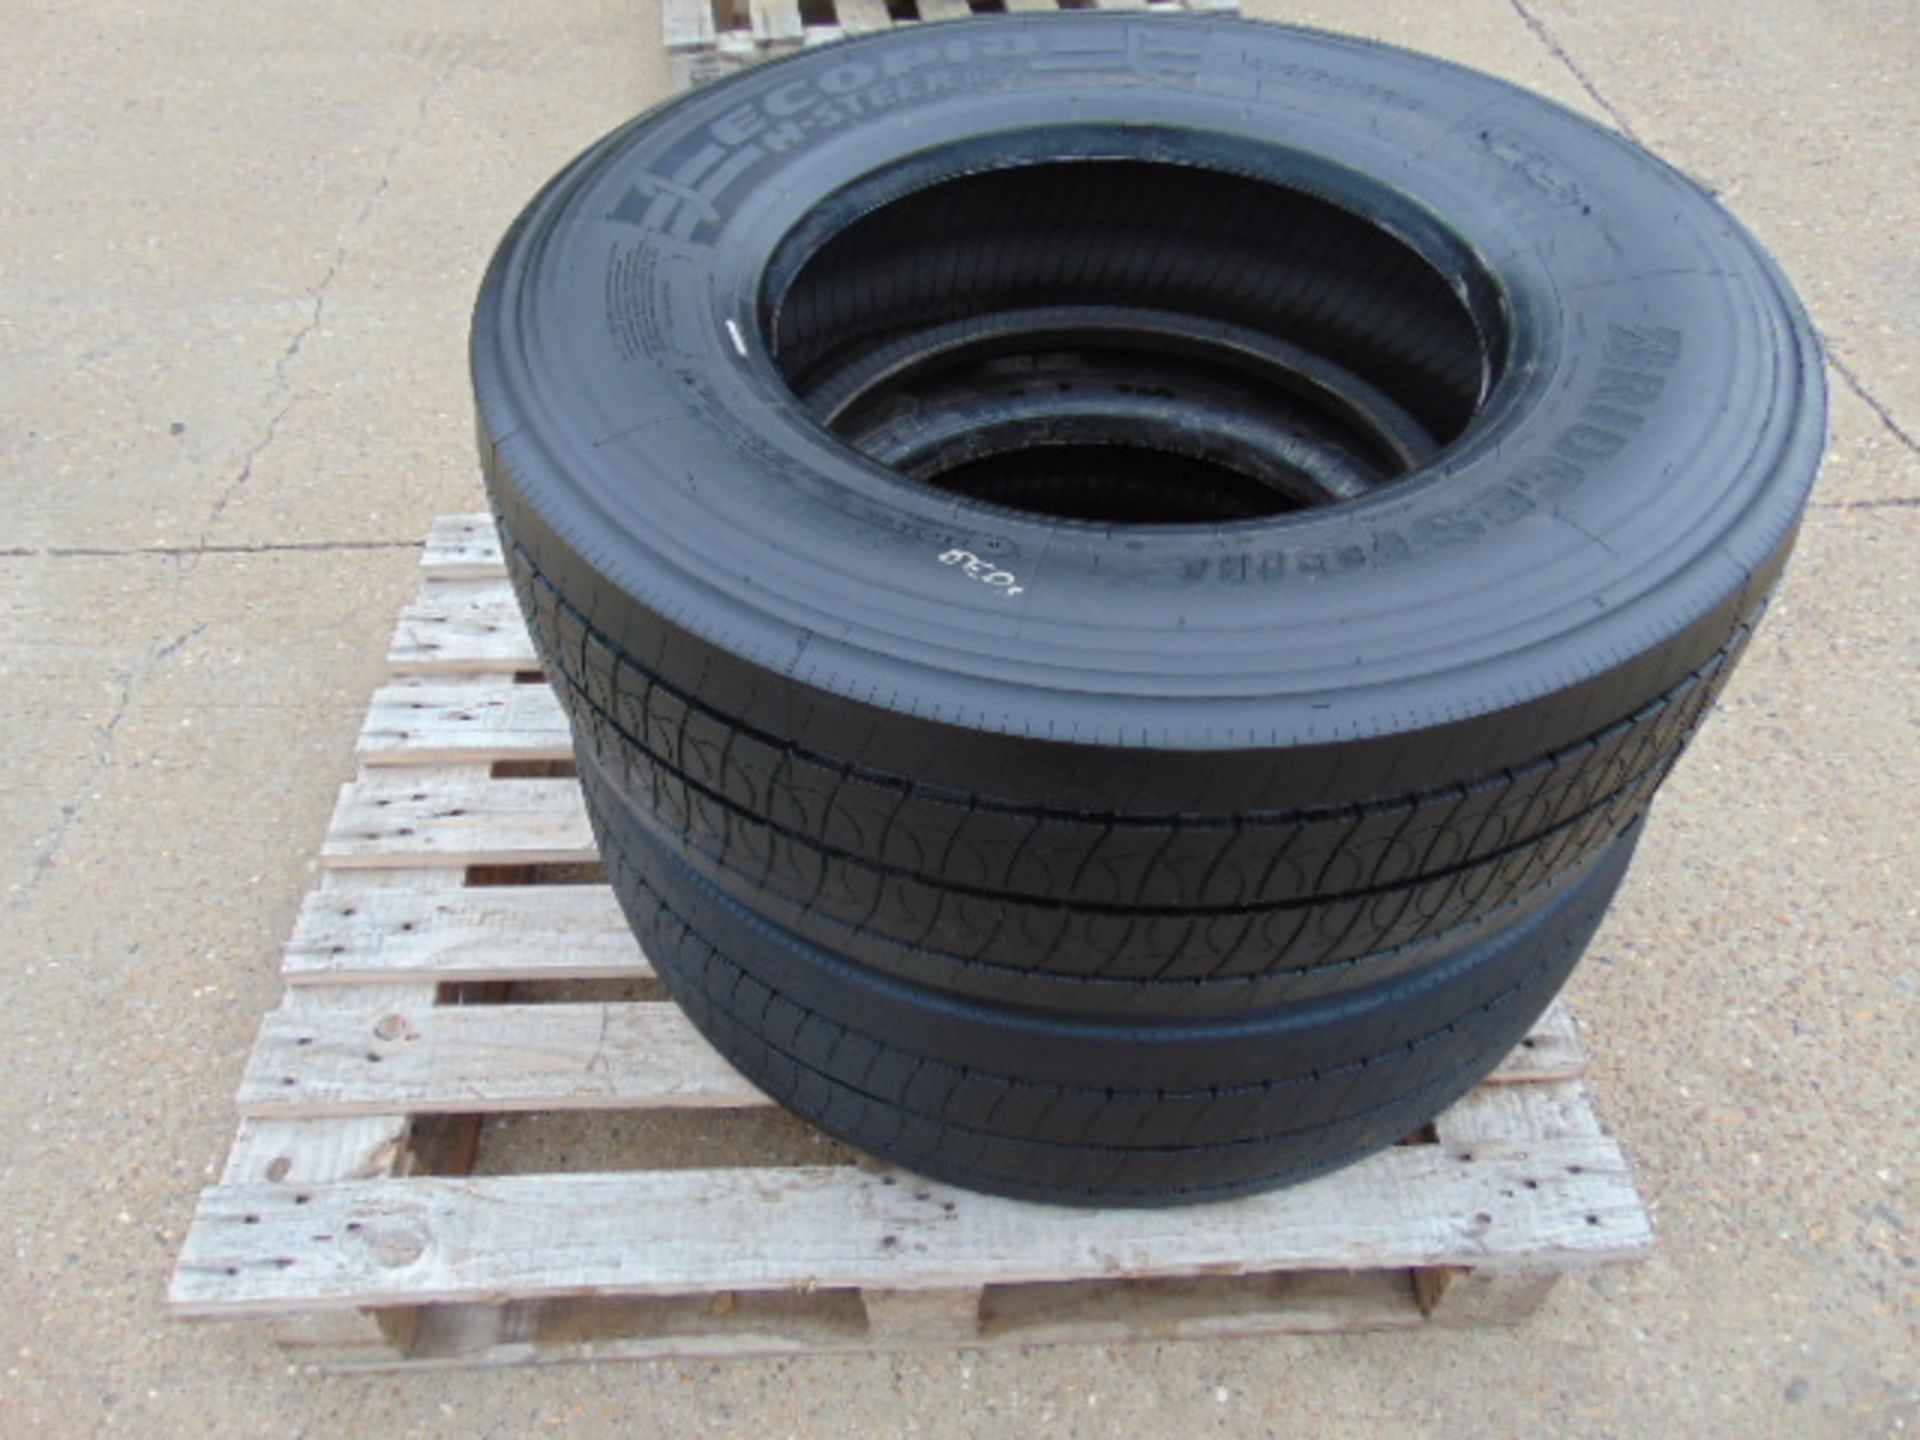 2 x Bridgestone Ecopla H-Steer 325/70 R 22.5 Tyres - Image 4 of 5